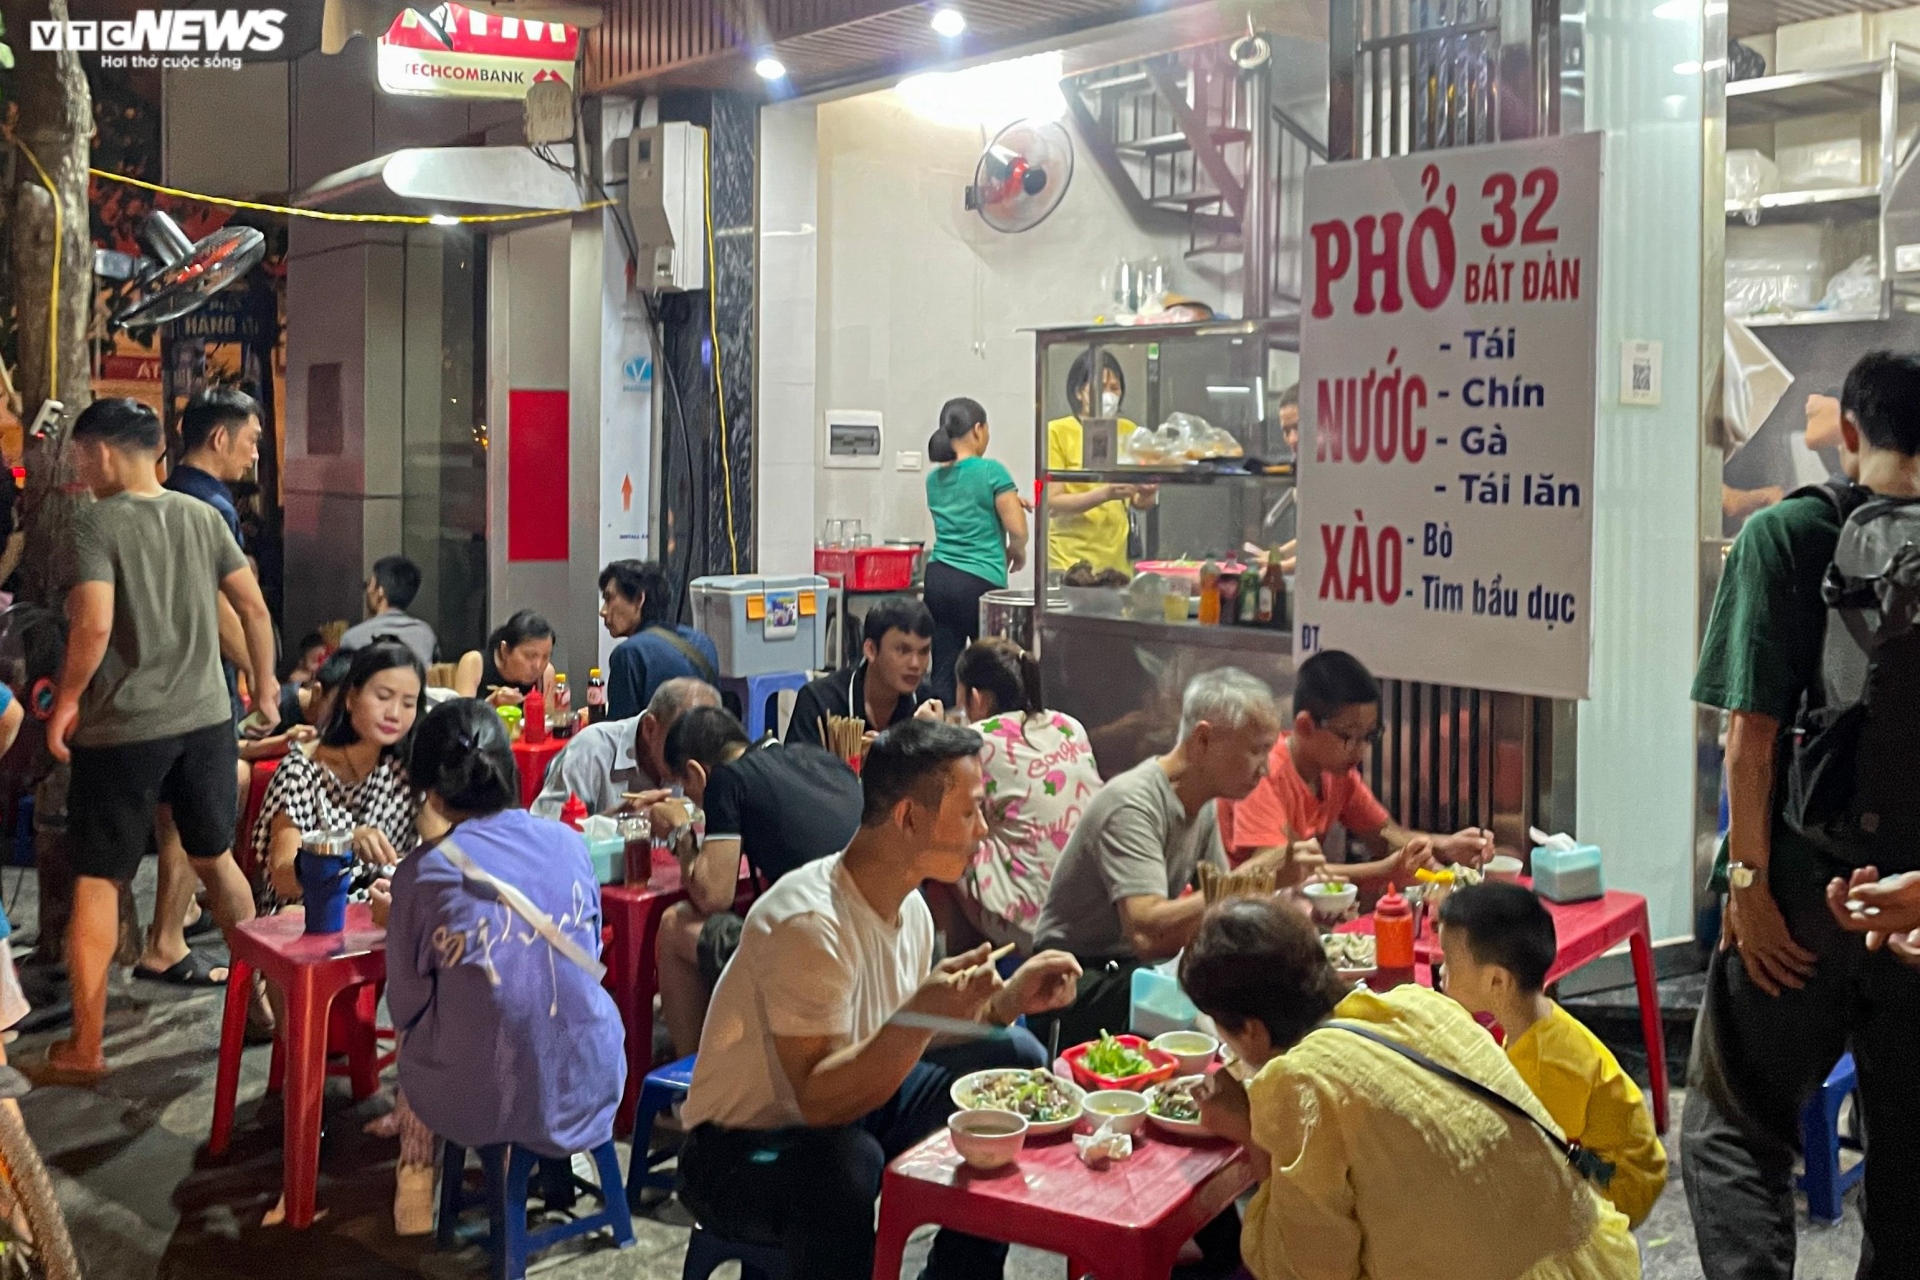 Hàng quán vỉa hè phố cổ Hà Nội chật kín khách dịp nghỉ lễ Quốc khánh - 8